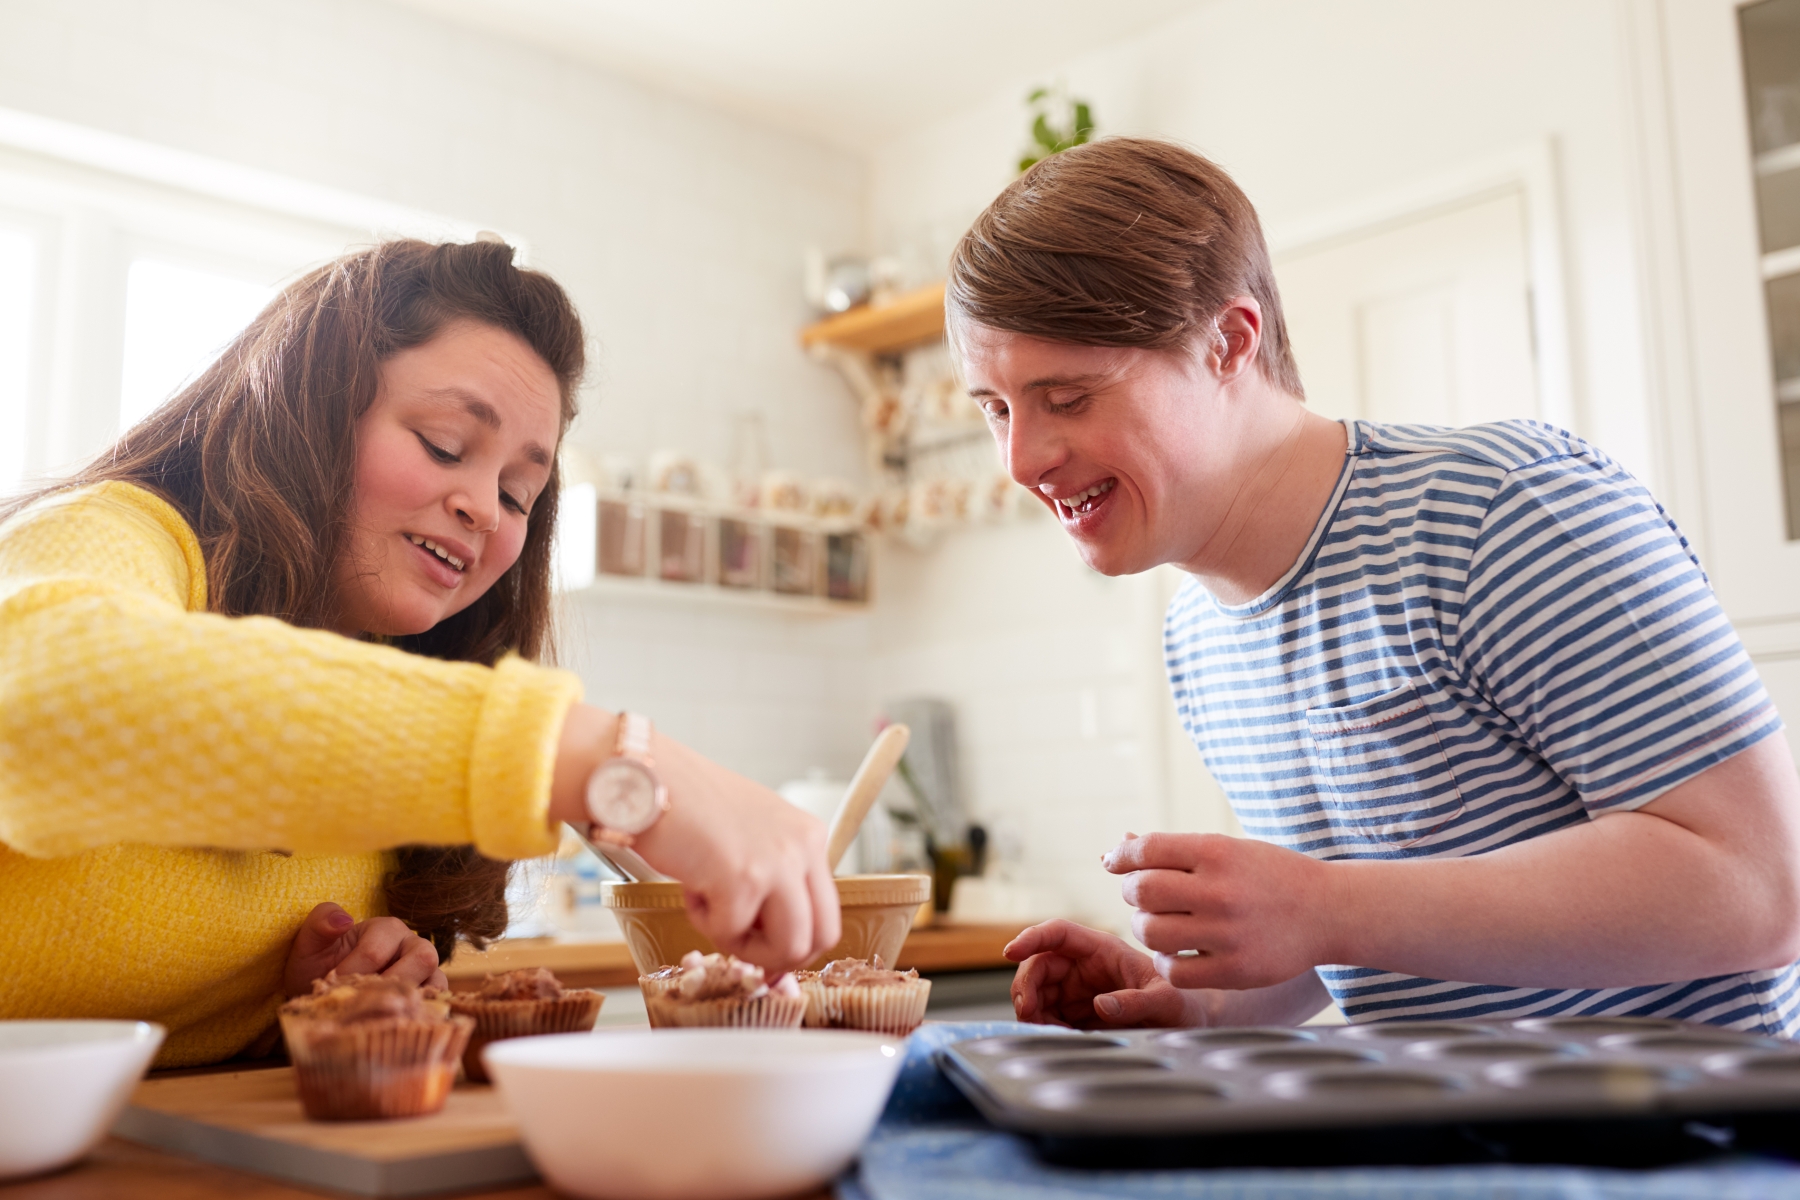 Två personer bakar muffins, en av dem har downs syndrom. De ser båda glada ut.